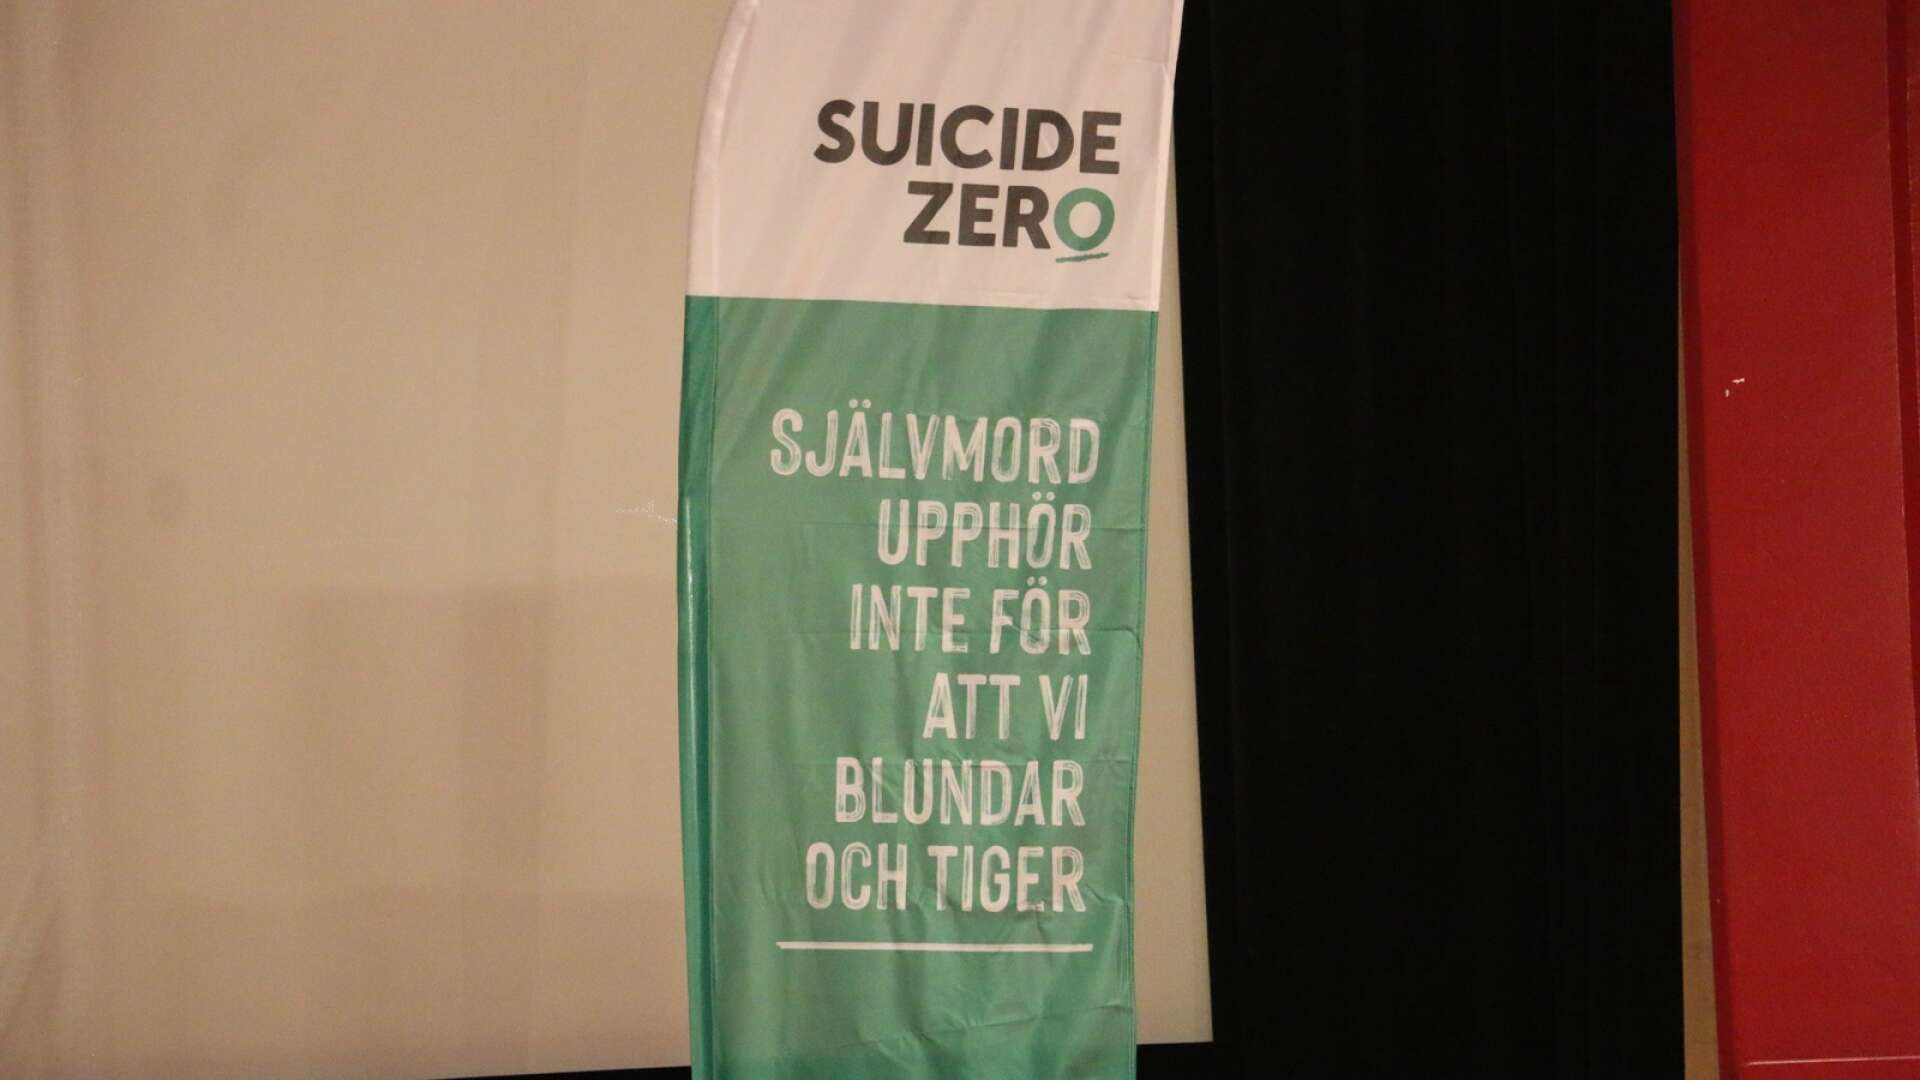 Organisationen Suicid Zero arbetar förebyggande för att förhindra självmord. 